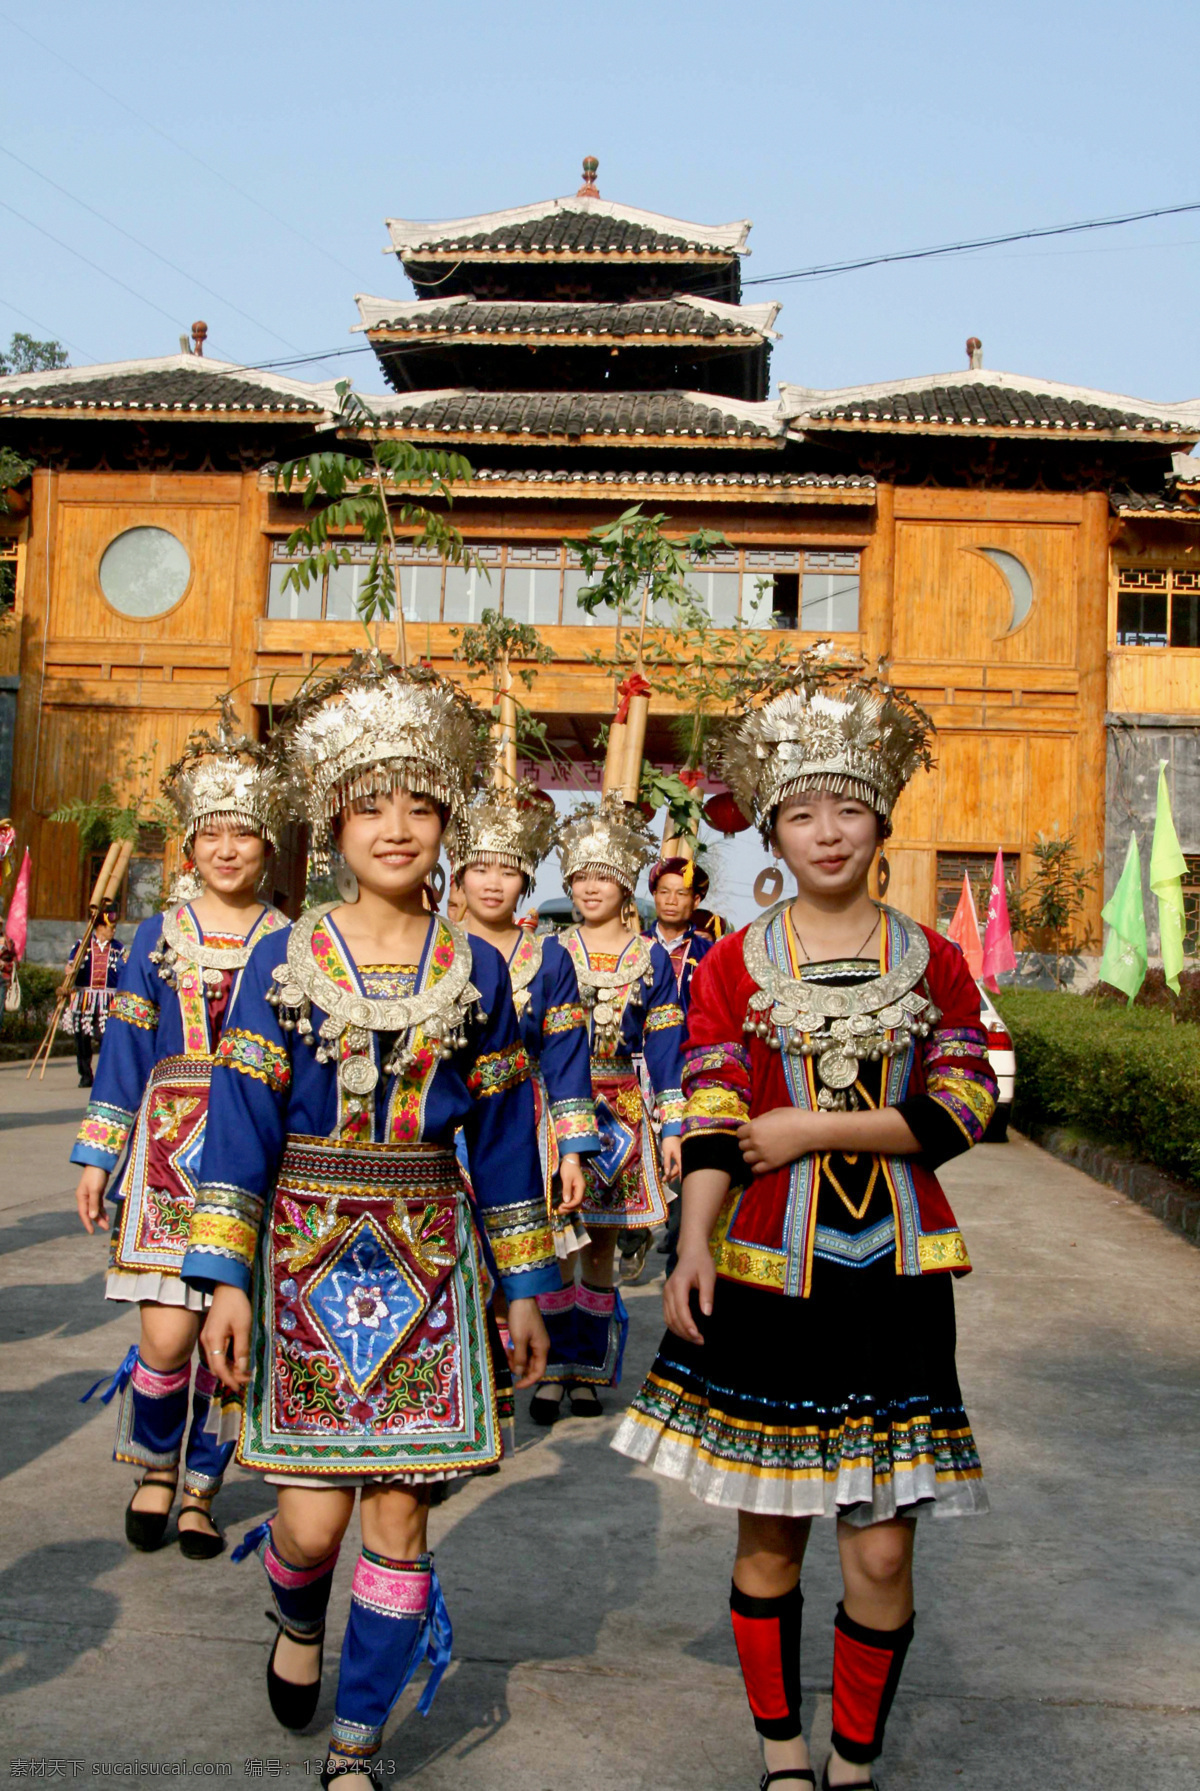 中国少数民族 广西壮族自治区 女孩 女人 中国 少数民族 开心 人物摄影 人物图库